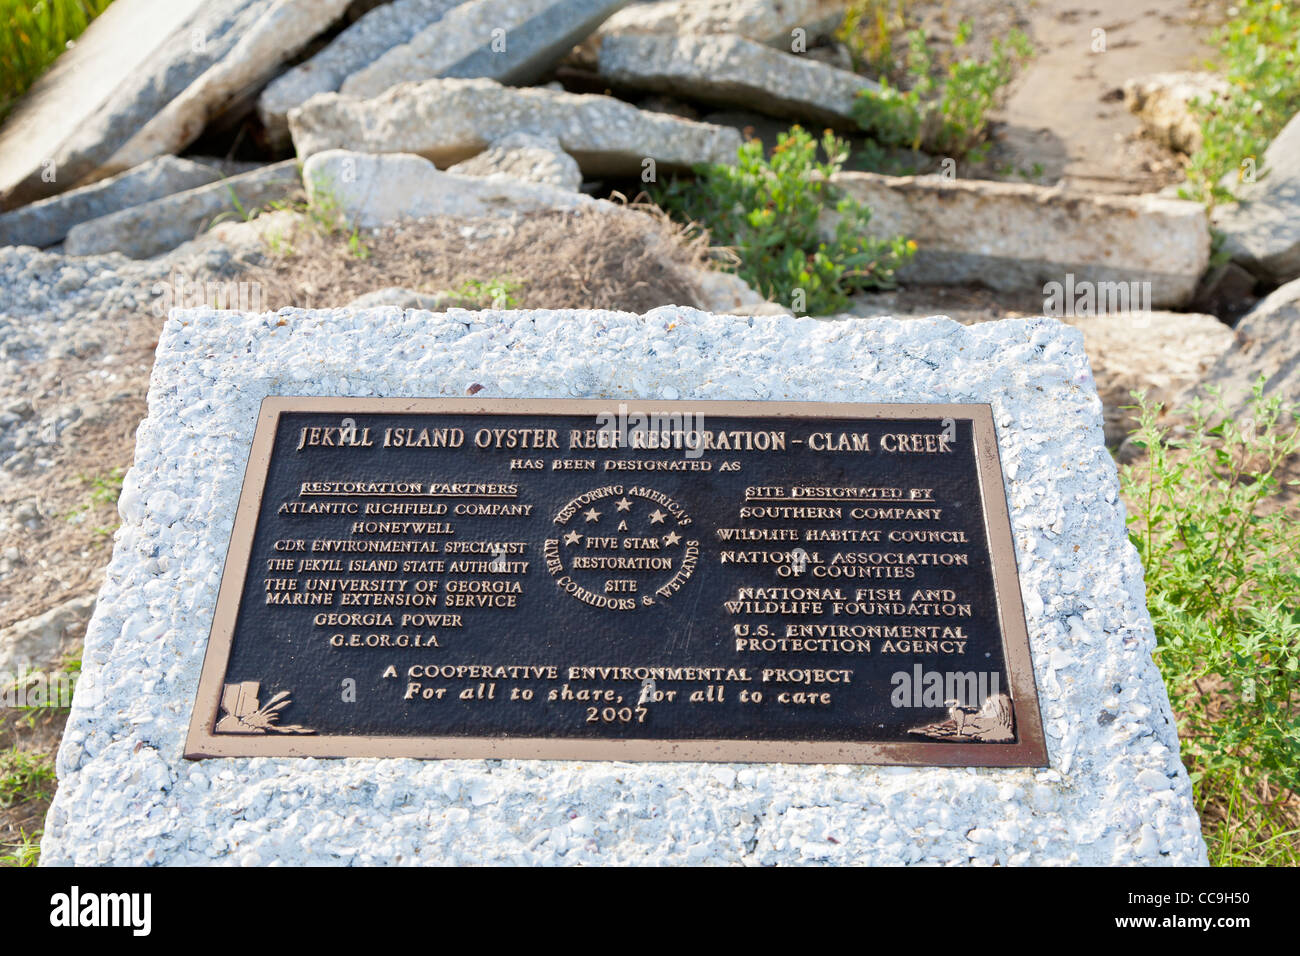 Denkmal am Oyster Reef Restaurierungsprojekt am Clam Creek auf Jekyll Island, Georgia Stockfoto